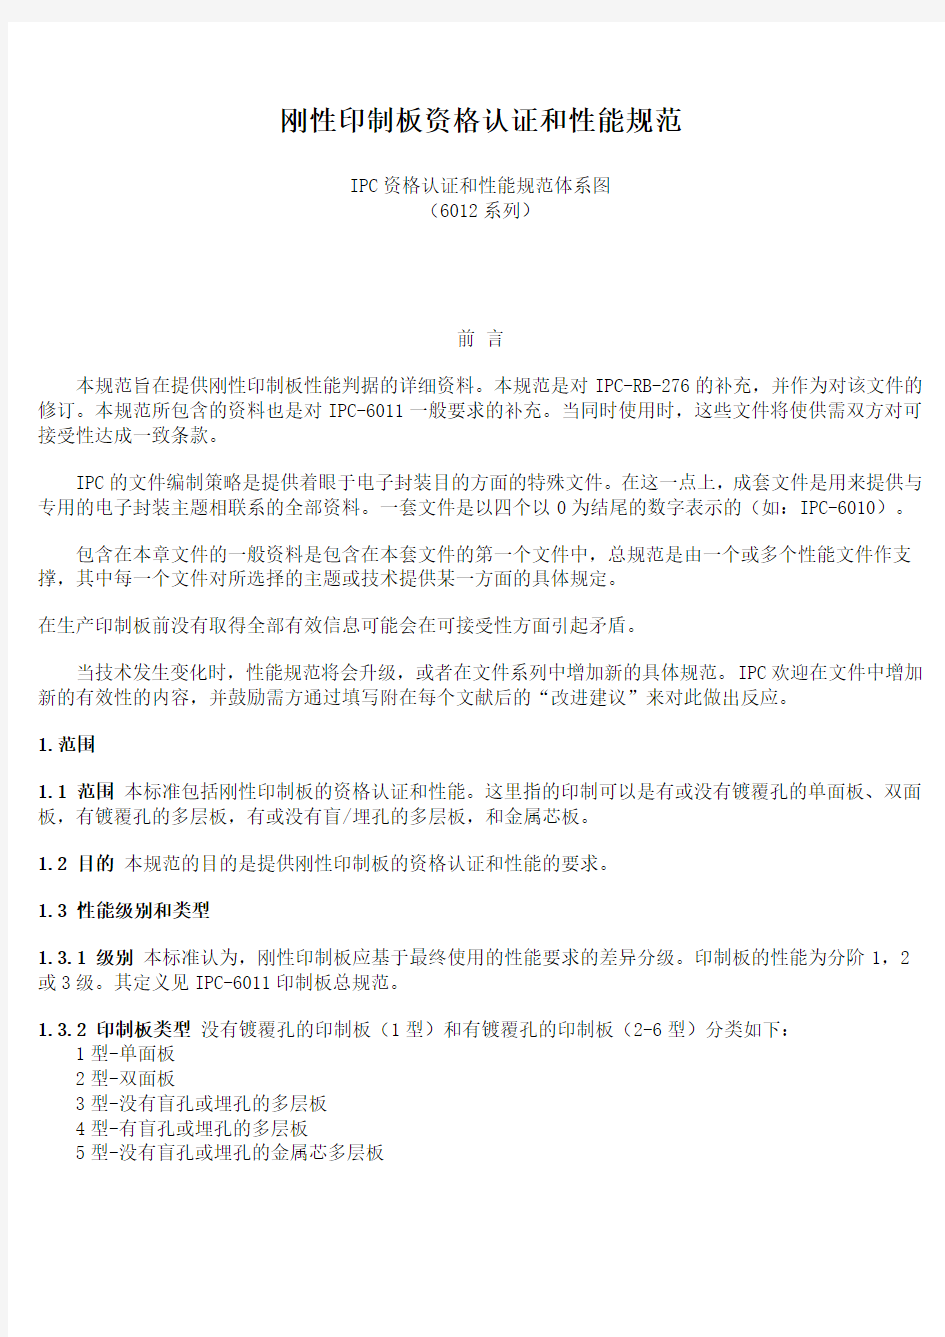 IPC6012规范(中文版)